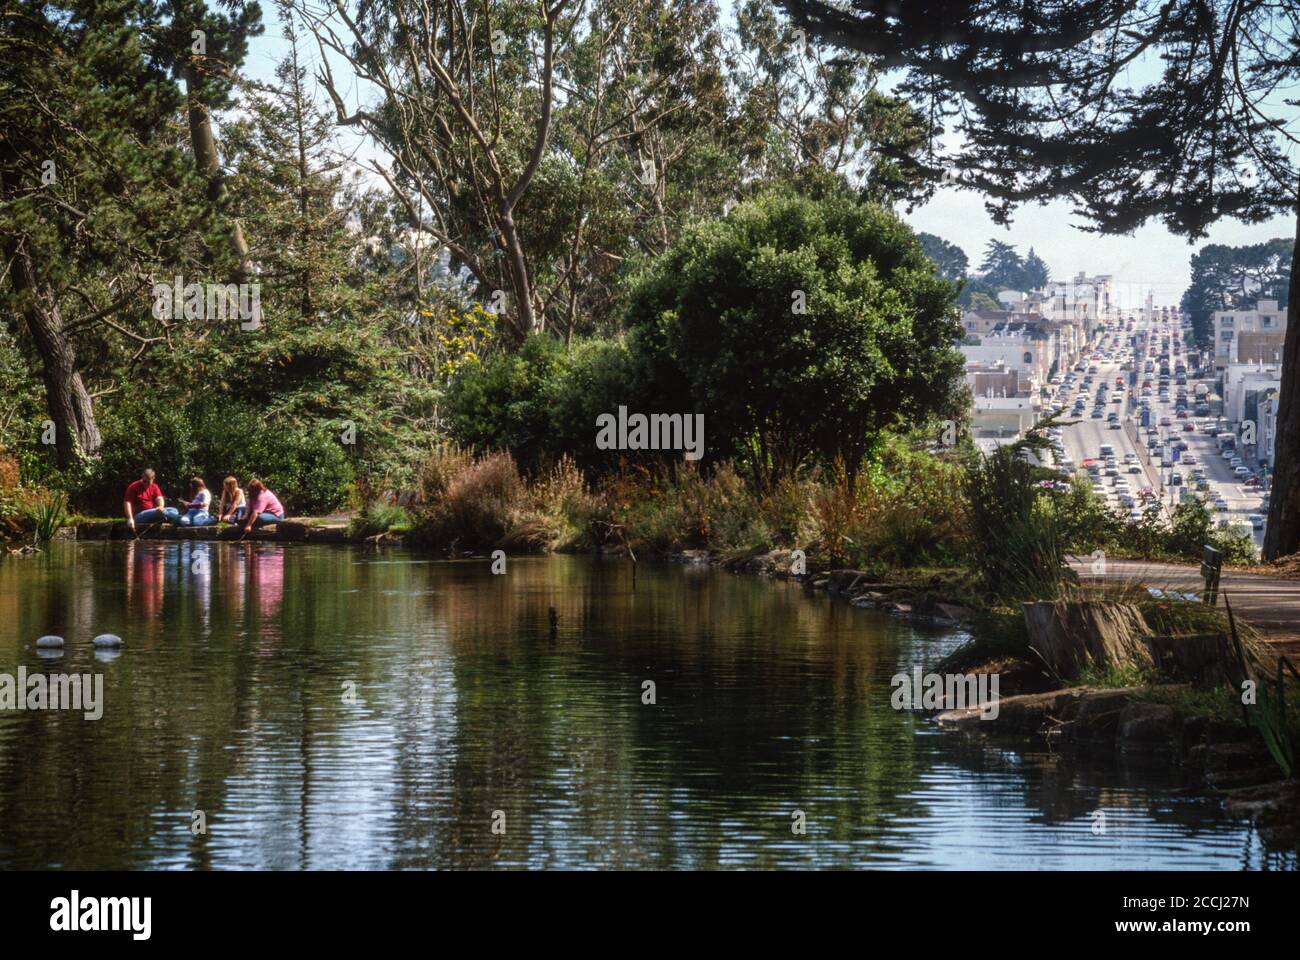 San Francisco, California, Stati Uniti. La famiglia che alimenta i pesci al lago Stow, Golden Gate Park. 19th Avenue Traffic sulla destra. Foto Stock